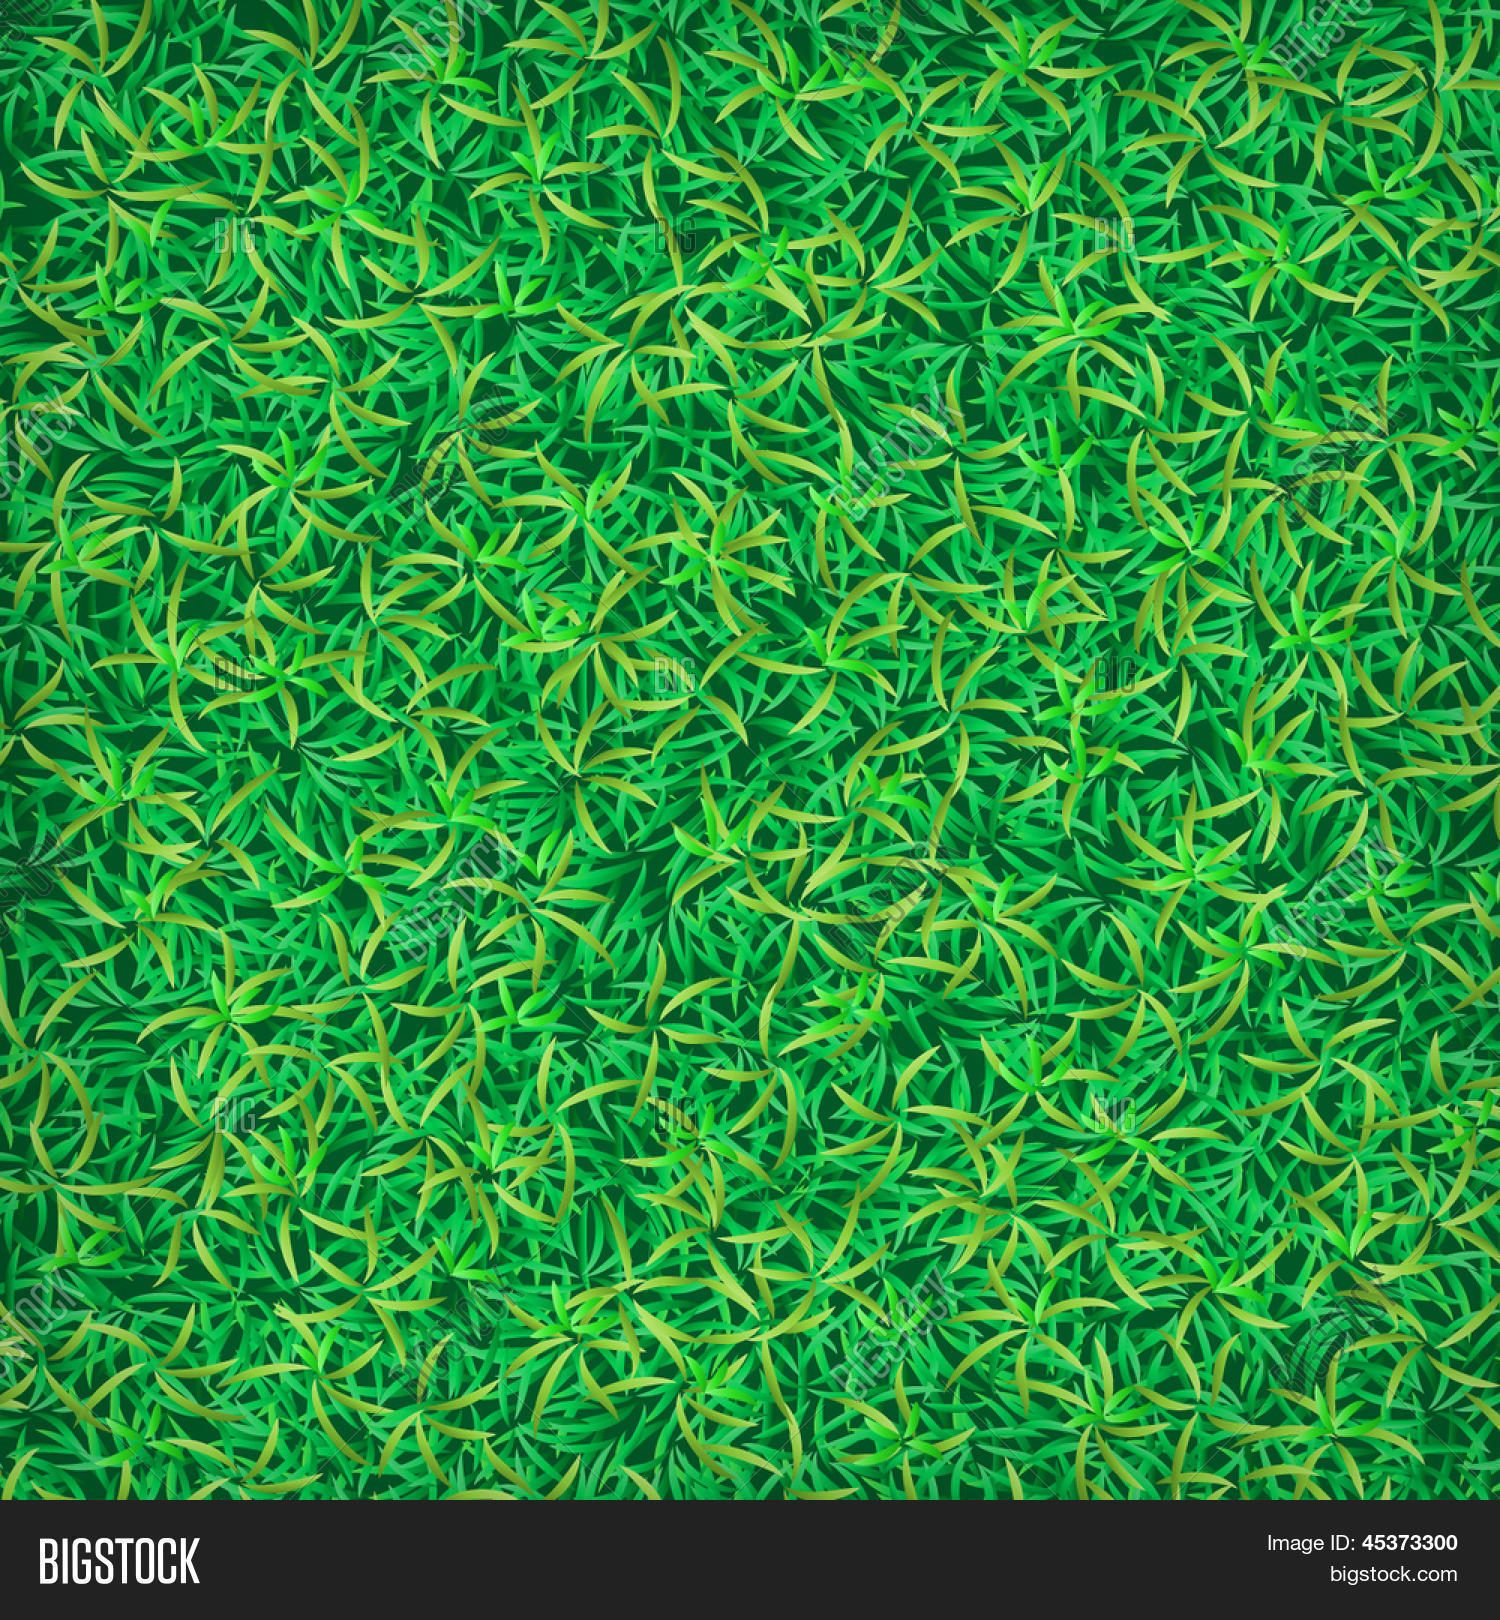 Green Grass Background. Grass Vector & Photo | Bigstock